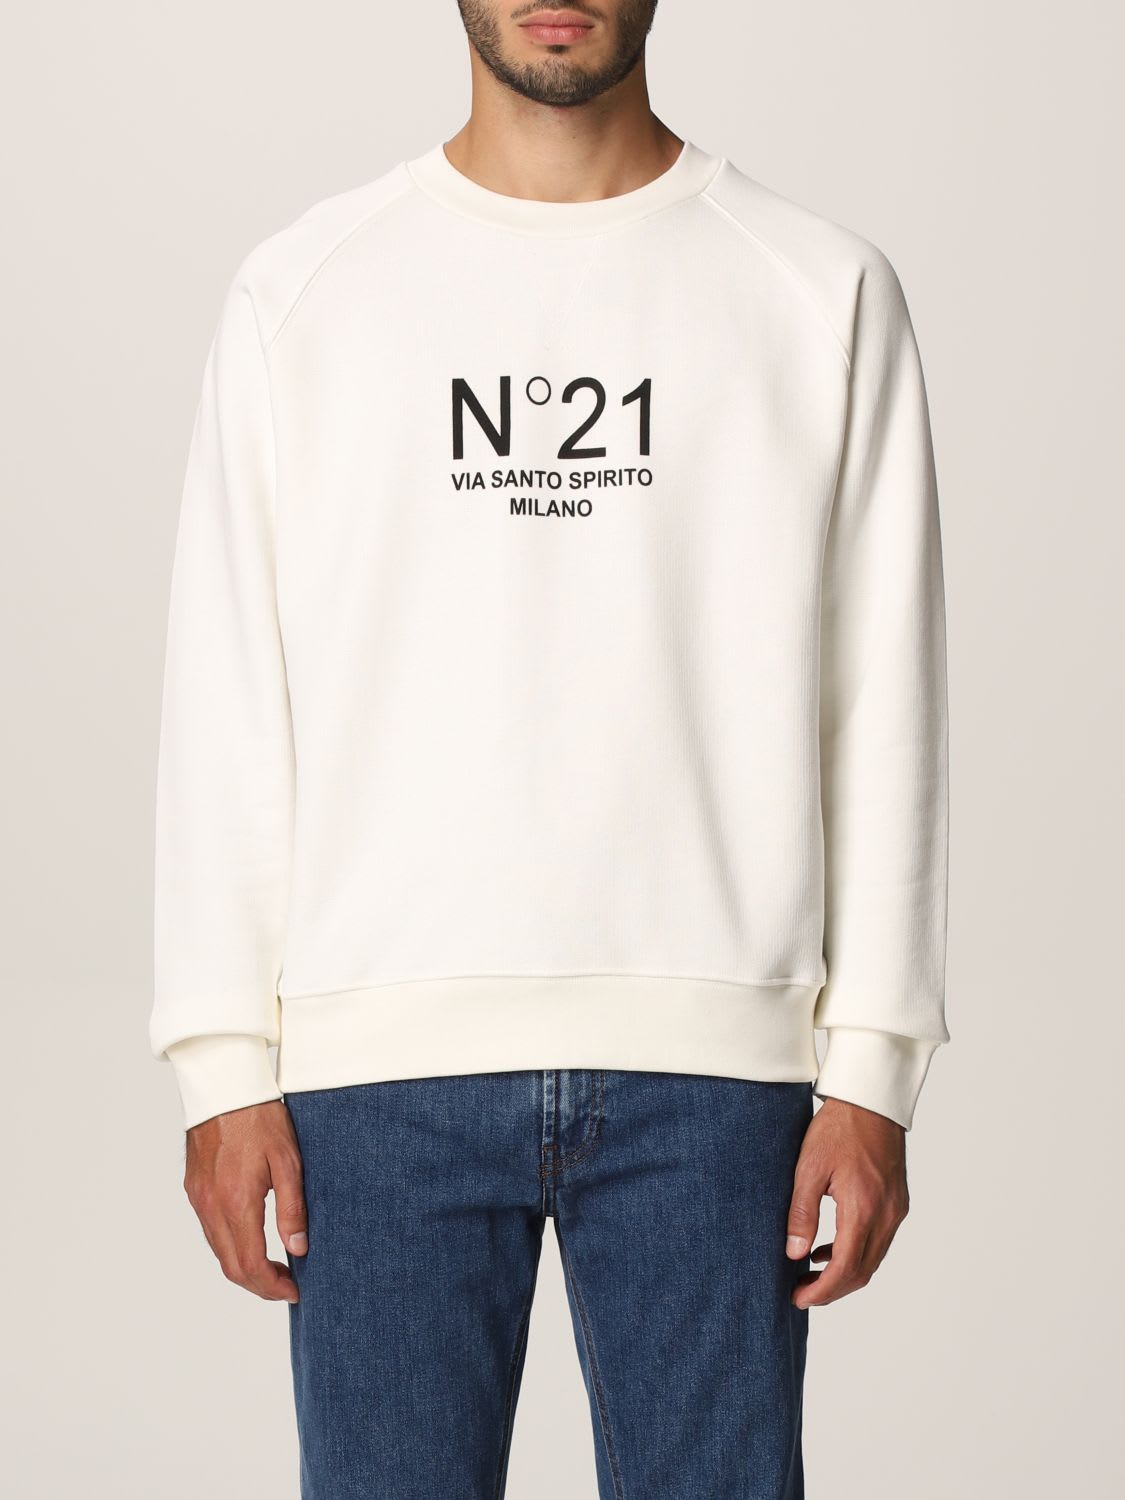 N.21 N° 21 Sweatshirt Sweatshirt Men N° 21